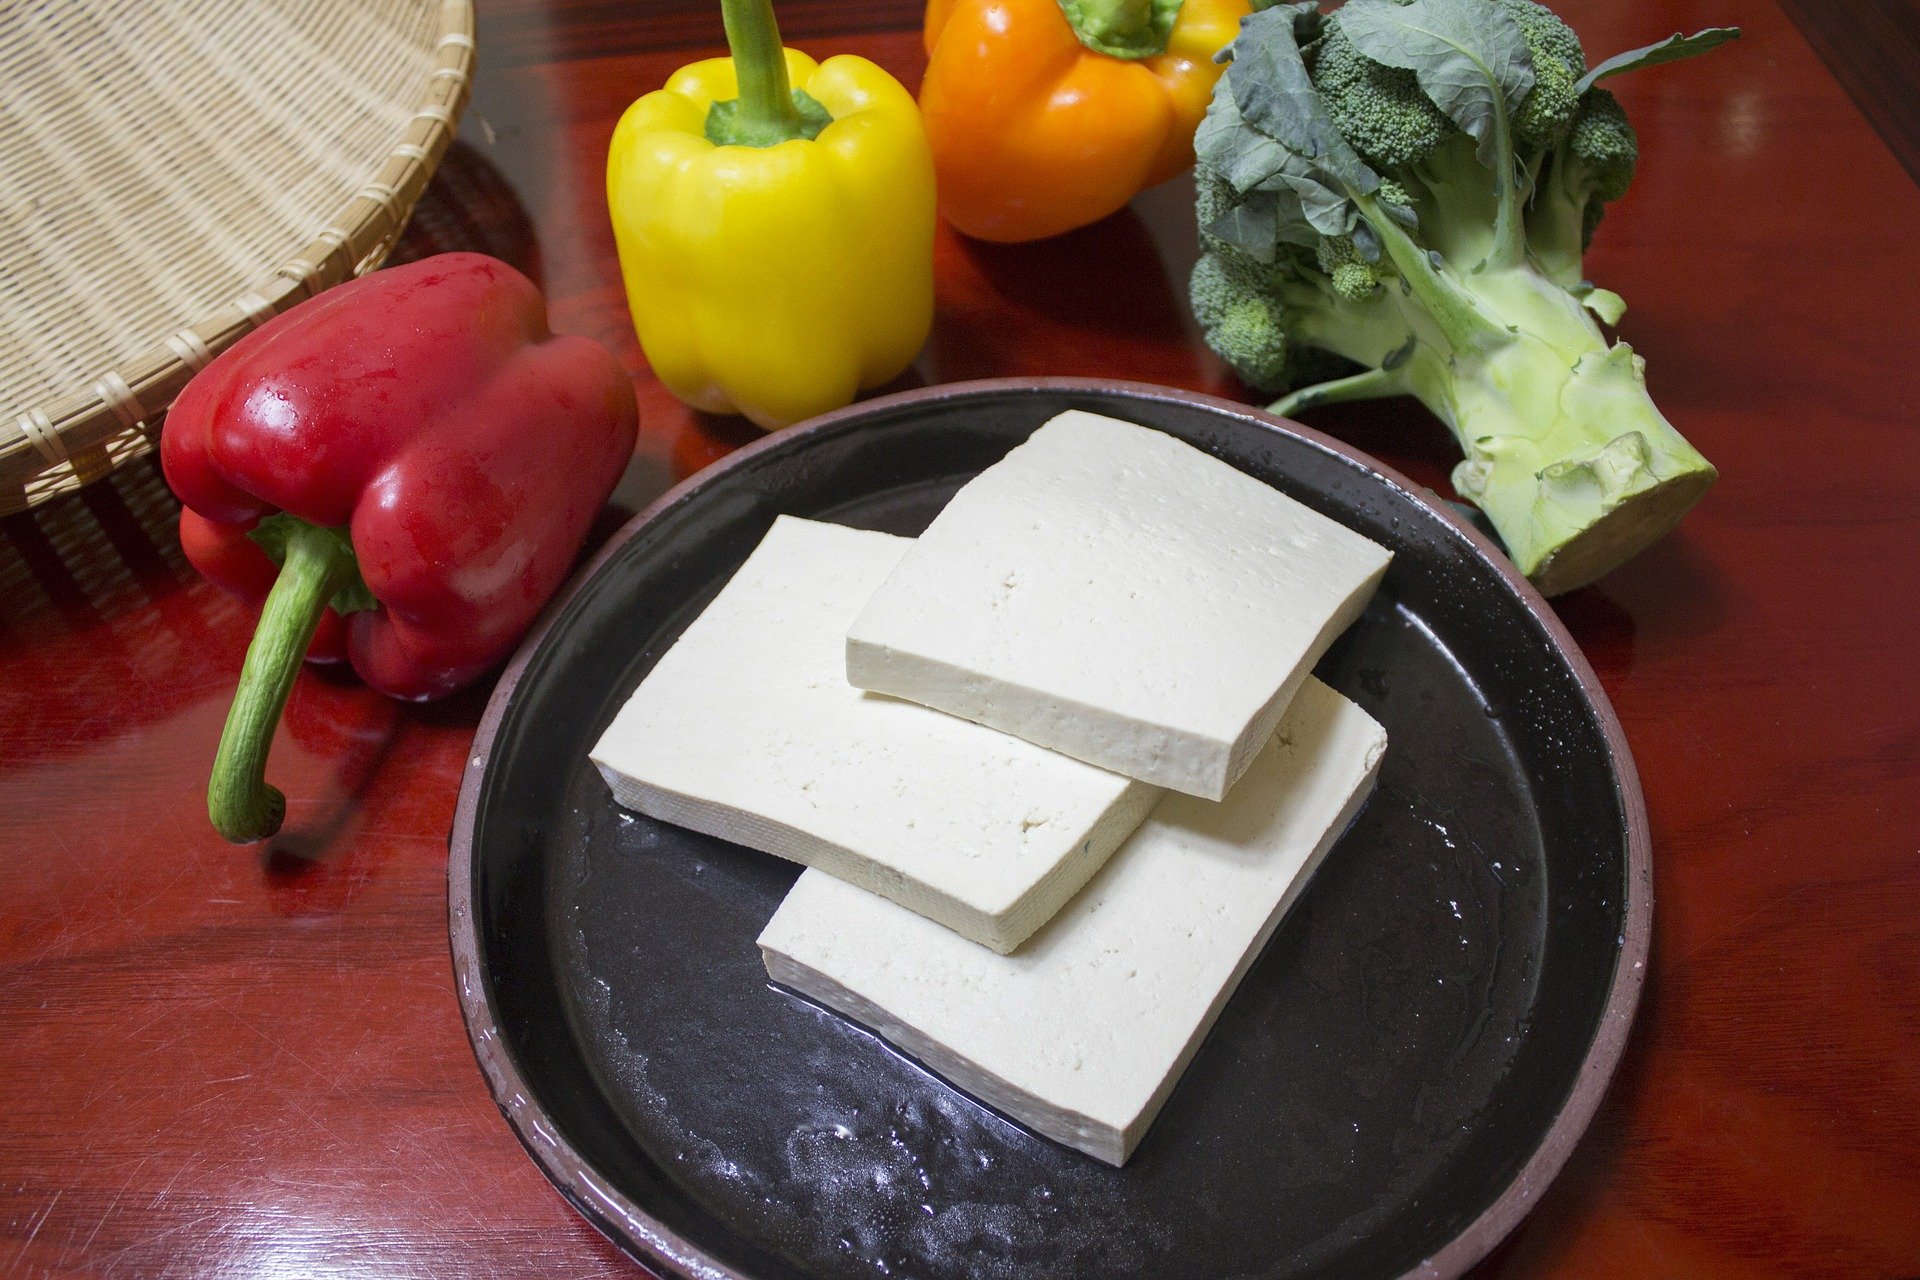 slice the tofu 597229 1920.jpg?resize=412,232 - La fabrication du tofu cause un problème écologique et sanitaire